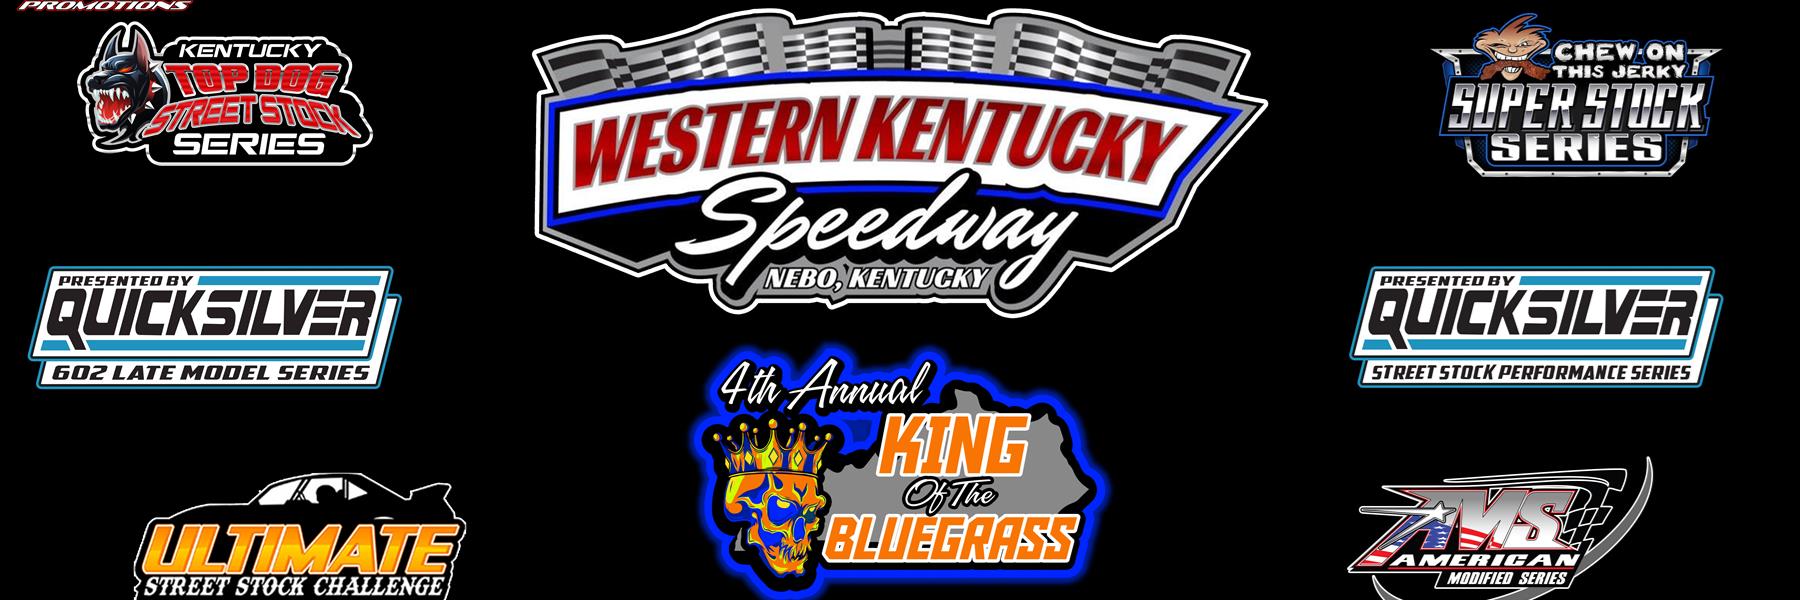 8/27/2022 - Western Kentucky Speedway